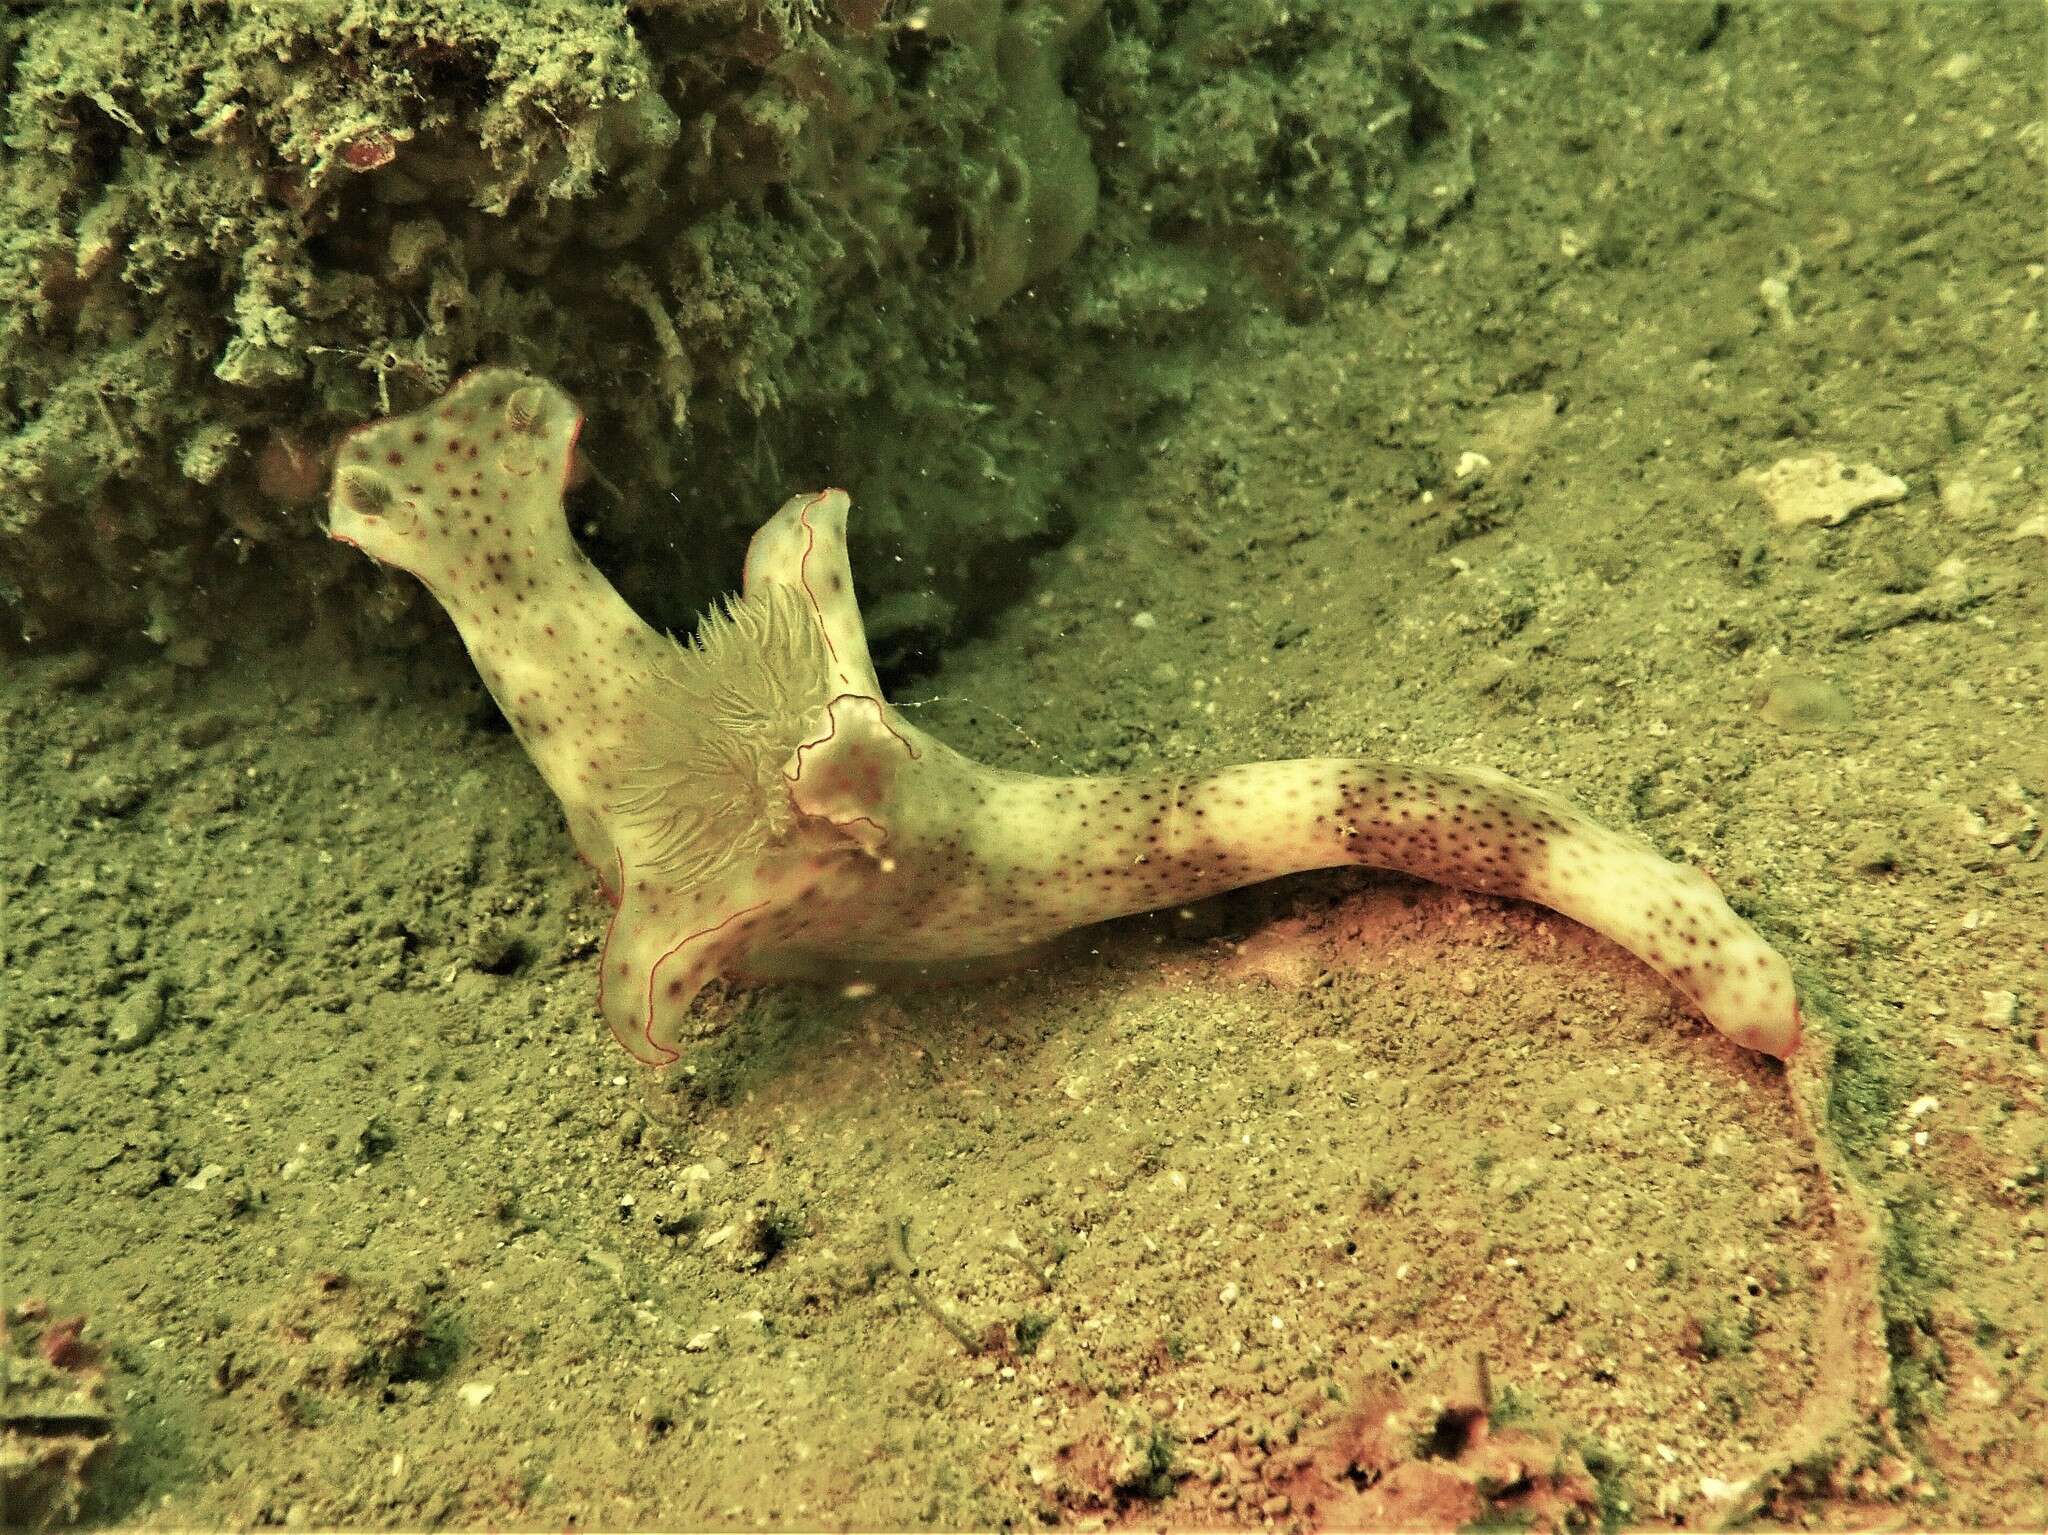 Image of Ceratosoma gracillimum Semper ex Bergh 1876